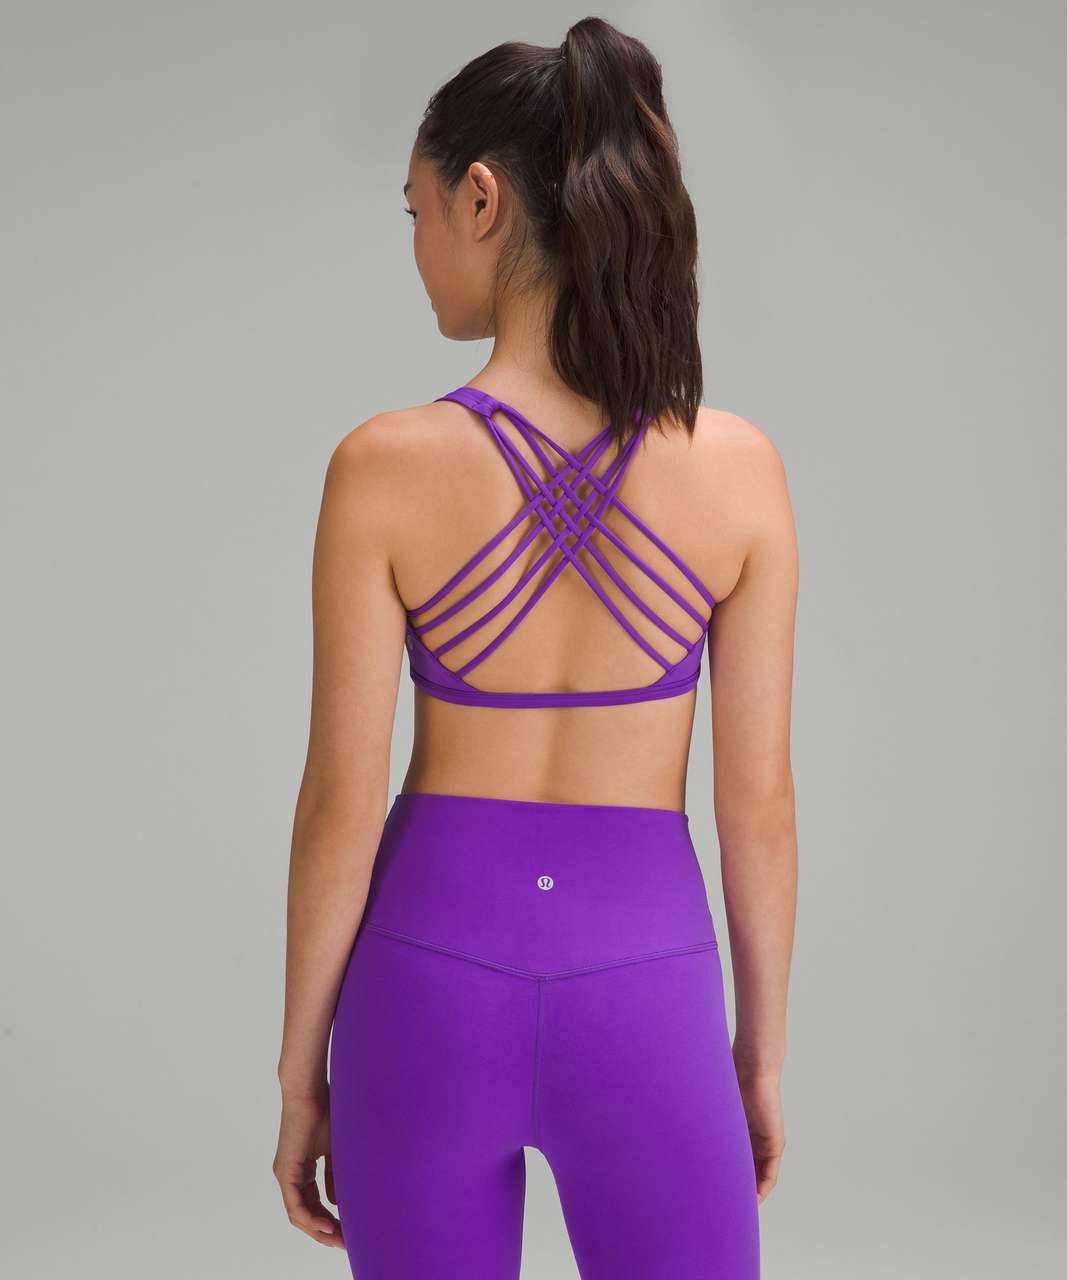 Women Lululemon lime green/ purple pattern sports bra Size 4